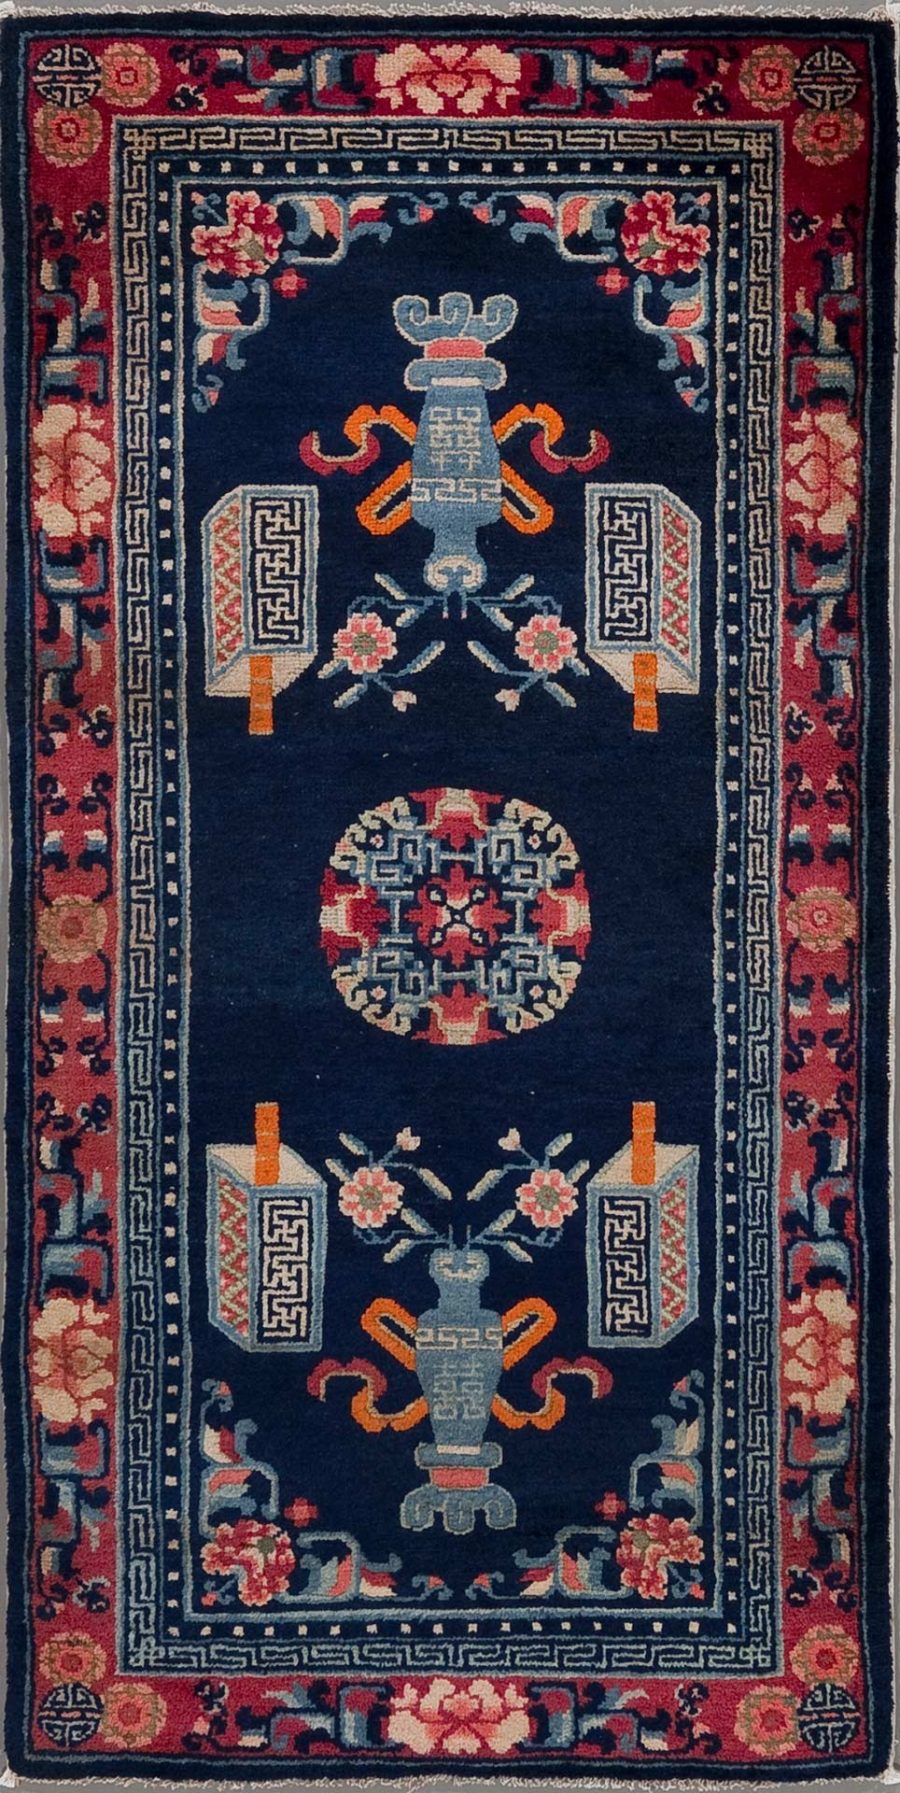 Traditioneller, von Hand gewebter Orientteppich mit dunkelblauem Hintergrund und einem zentralen Medaillon, umgeben von symmetrischen floralen Mustern und Vasenmotiven in Farben wie Rot, Beige und Blau; mit geometrischen Bordüren in Rot und Beige.